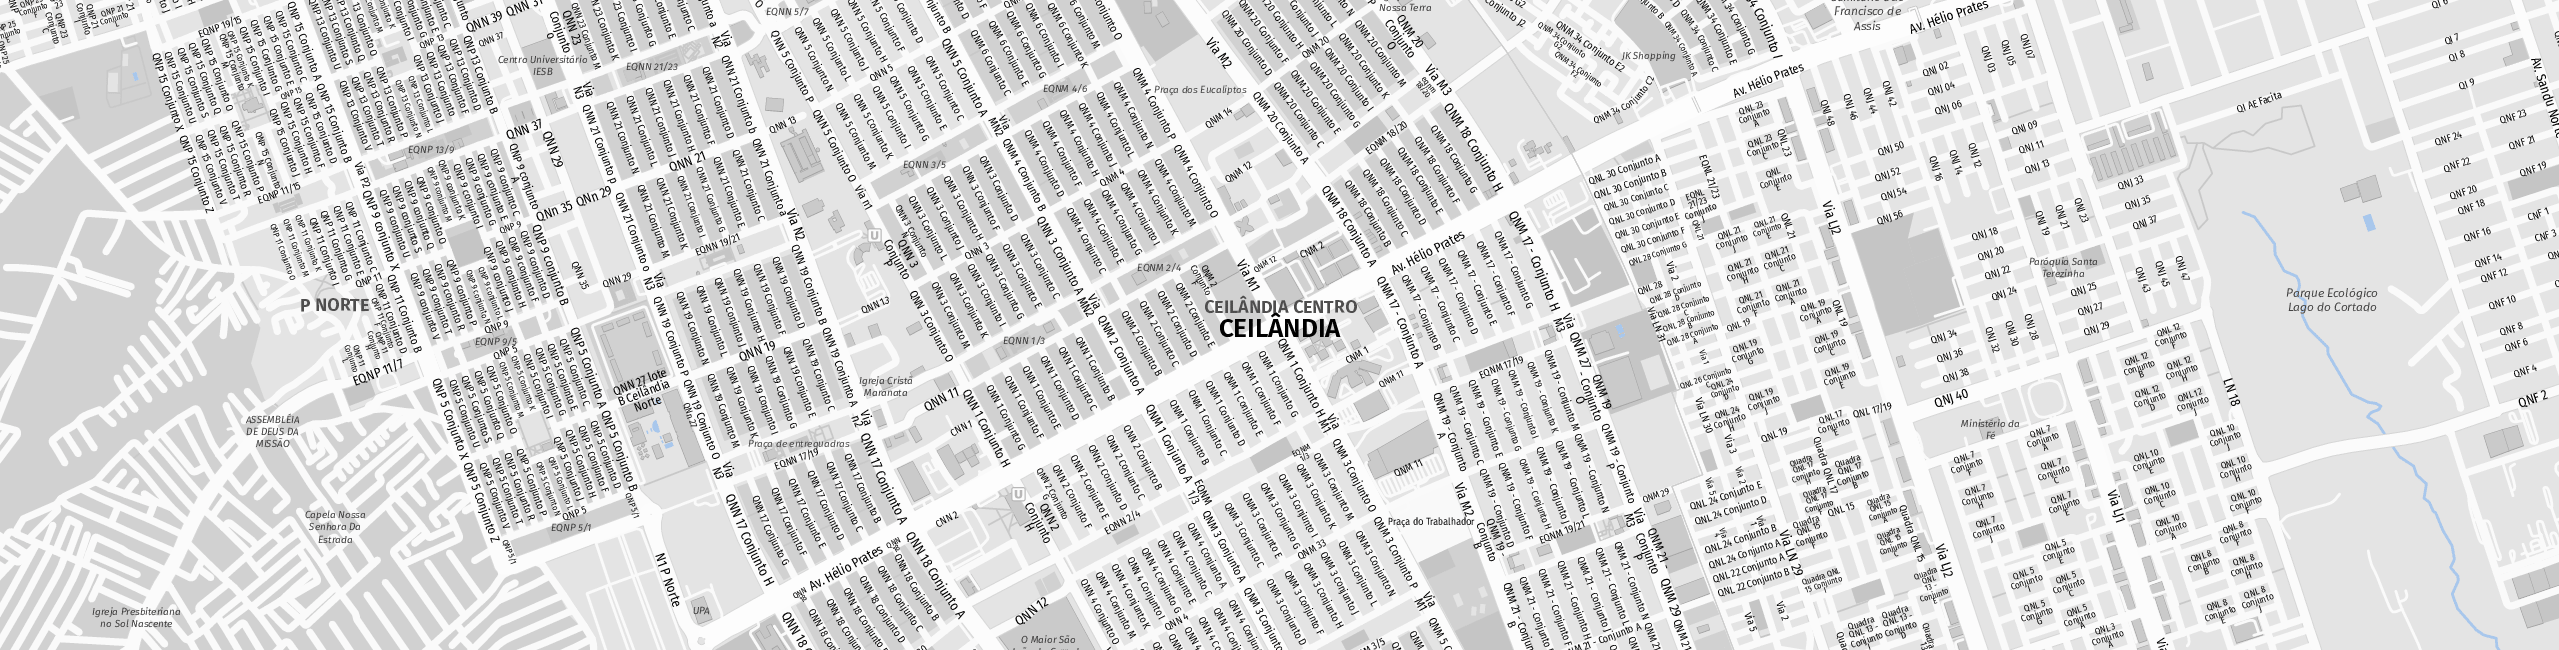 Stadtplan Ceilândia zum Downloaden.